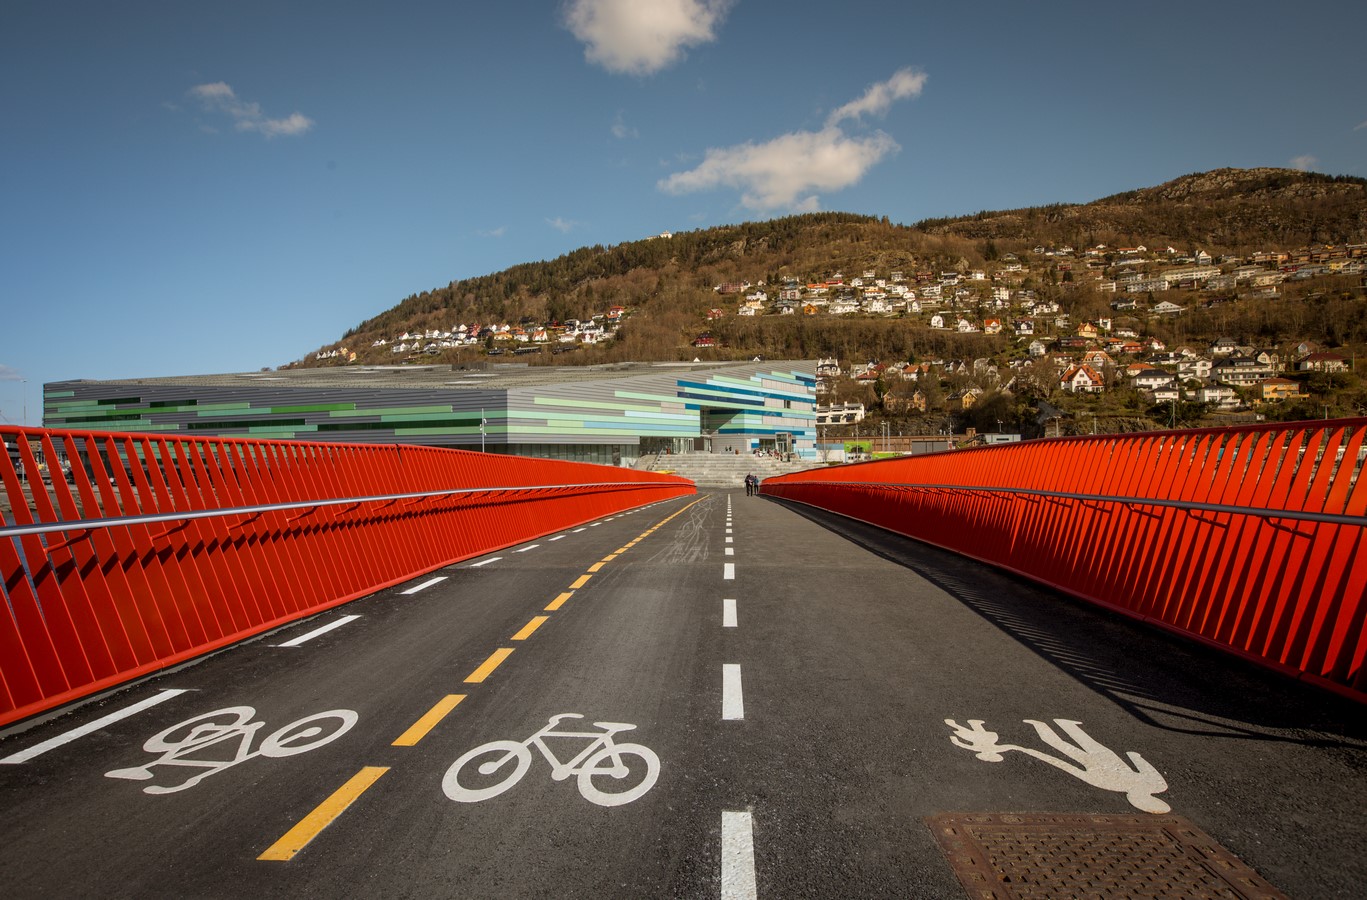 Nygårdstangen bicycle & footbridge, Bergen by Studio Granda - Sheet3